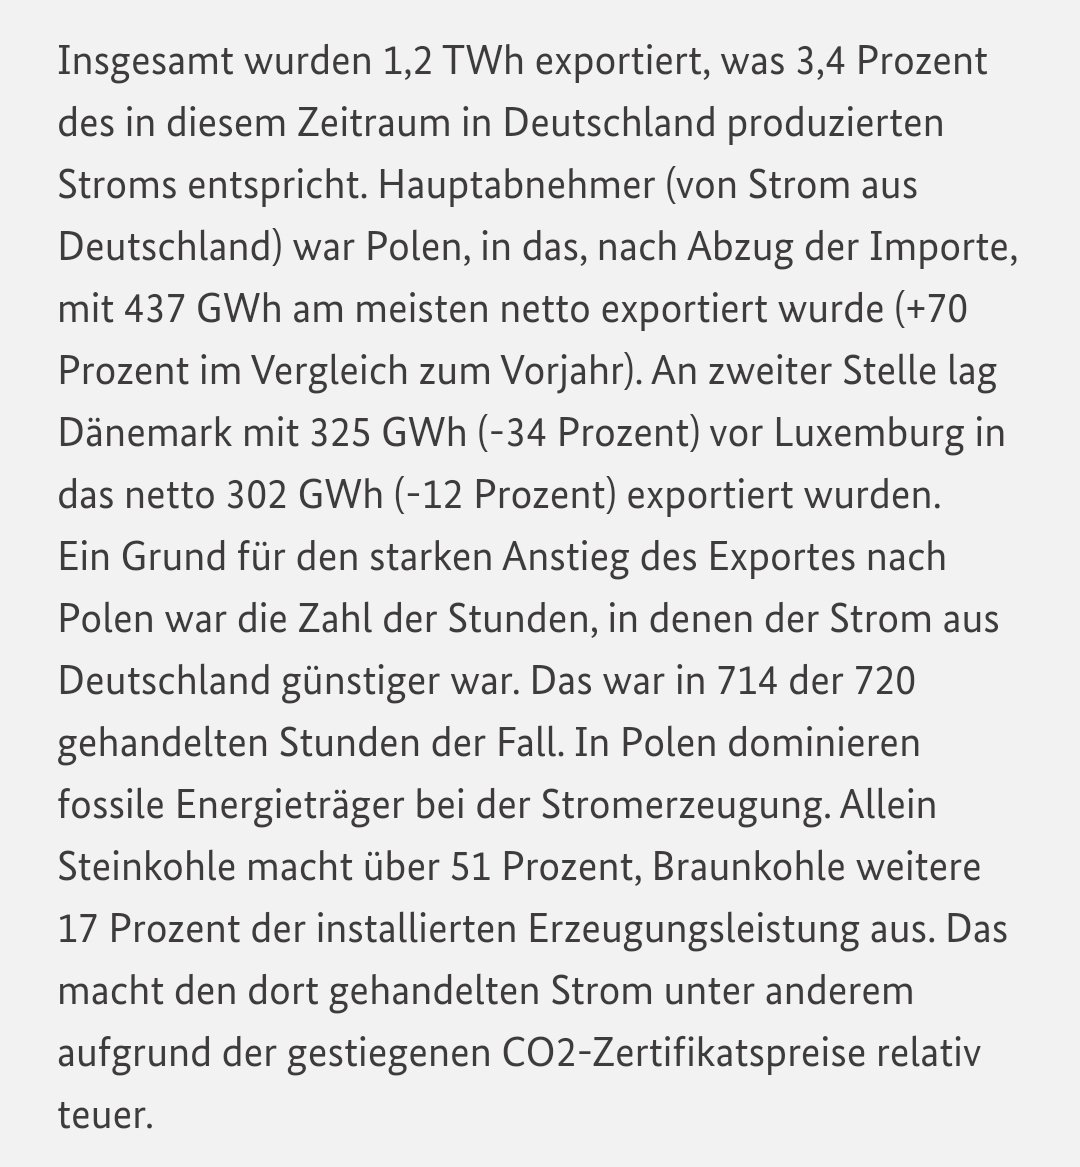 Den #polnischen #Kohlekraftwerken setzen jetzt die Kosten der EU-CO2-Emissionszertifikate auch immer mehr zu. 
Deutscher Importstrom (zur Hälfte CO2frei) ist meist billiger:
smard.de/home/topic-art…